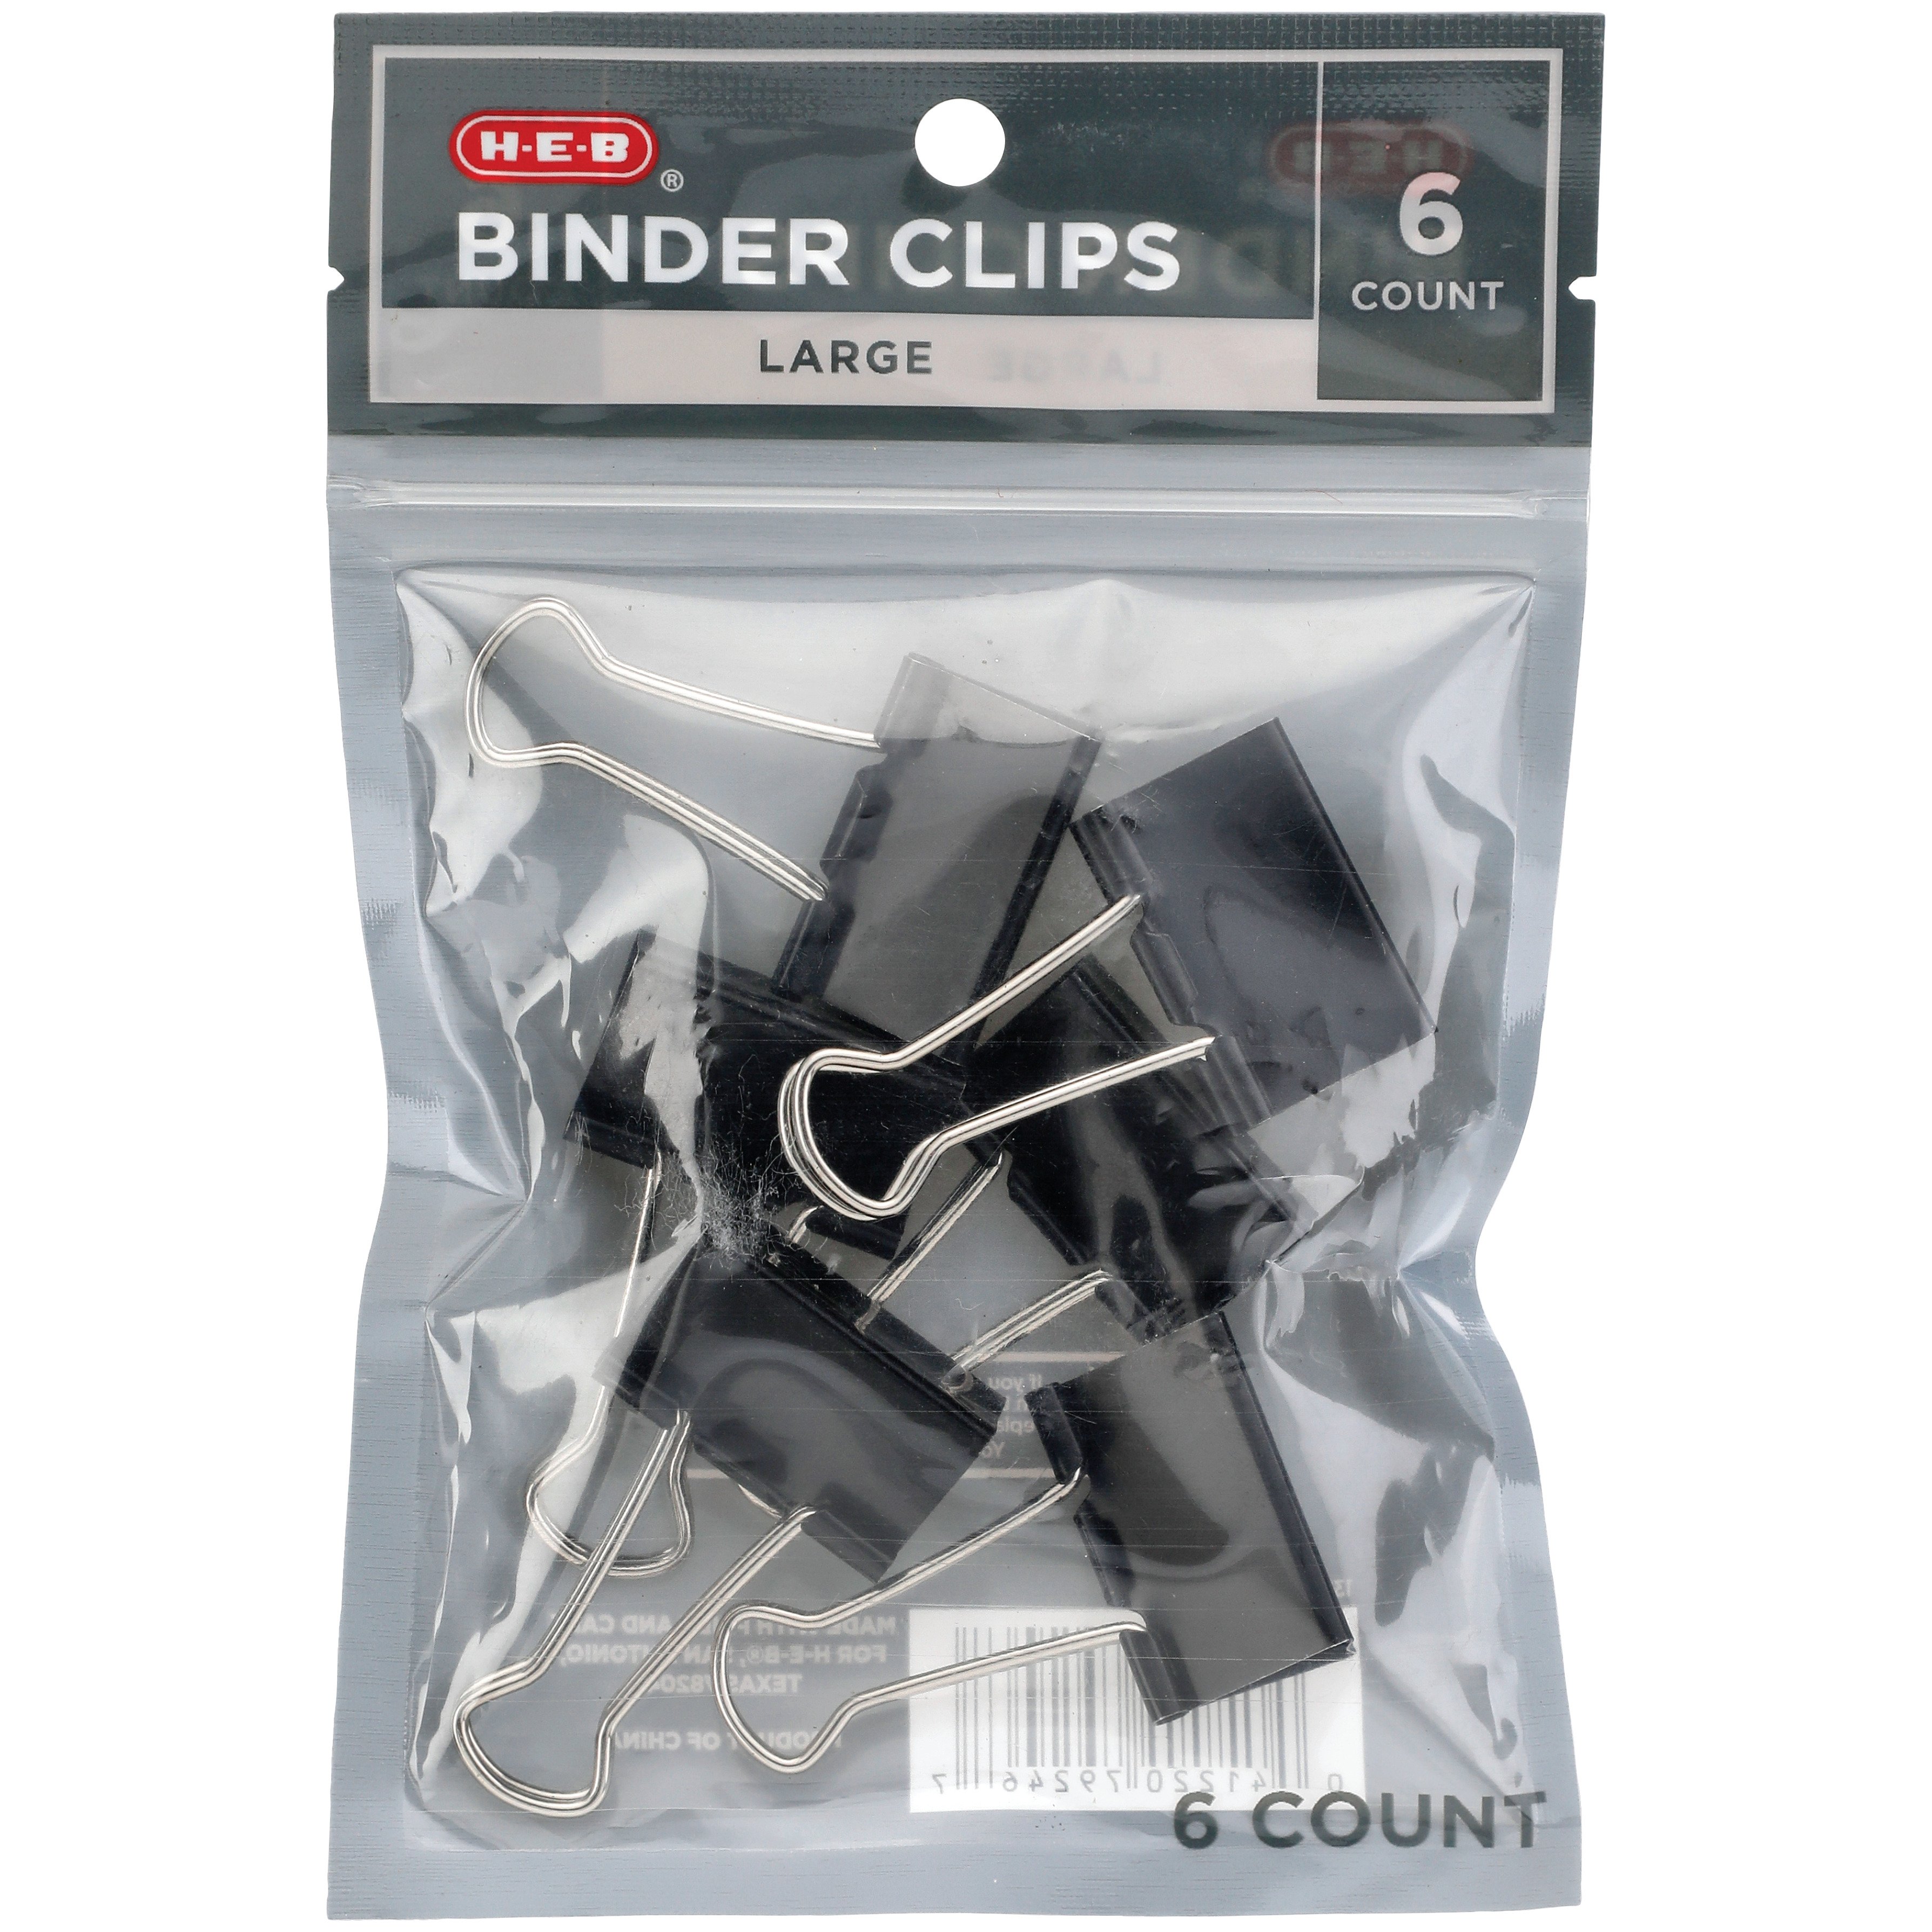 Binder Clips - Large